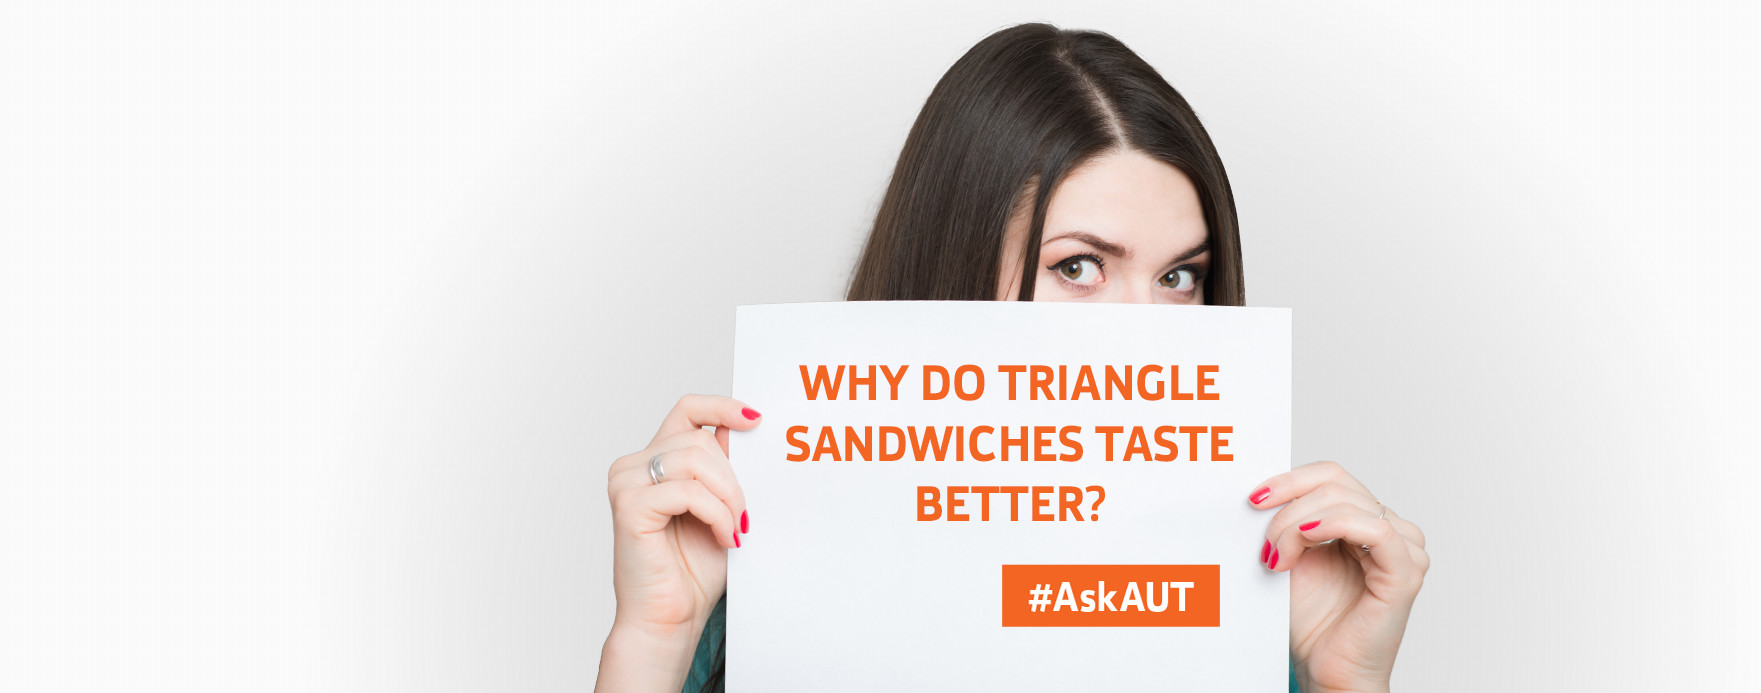 Triangle sandwiches?